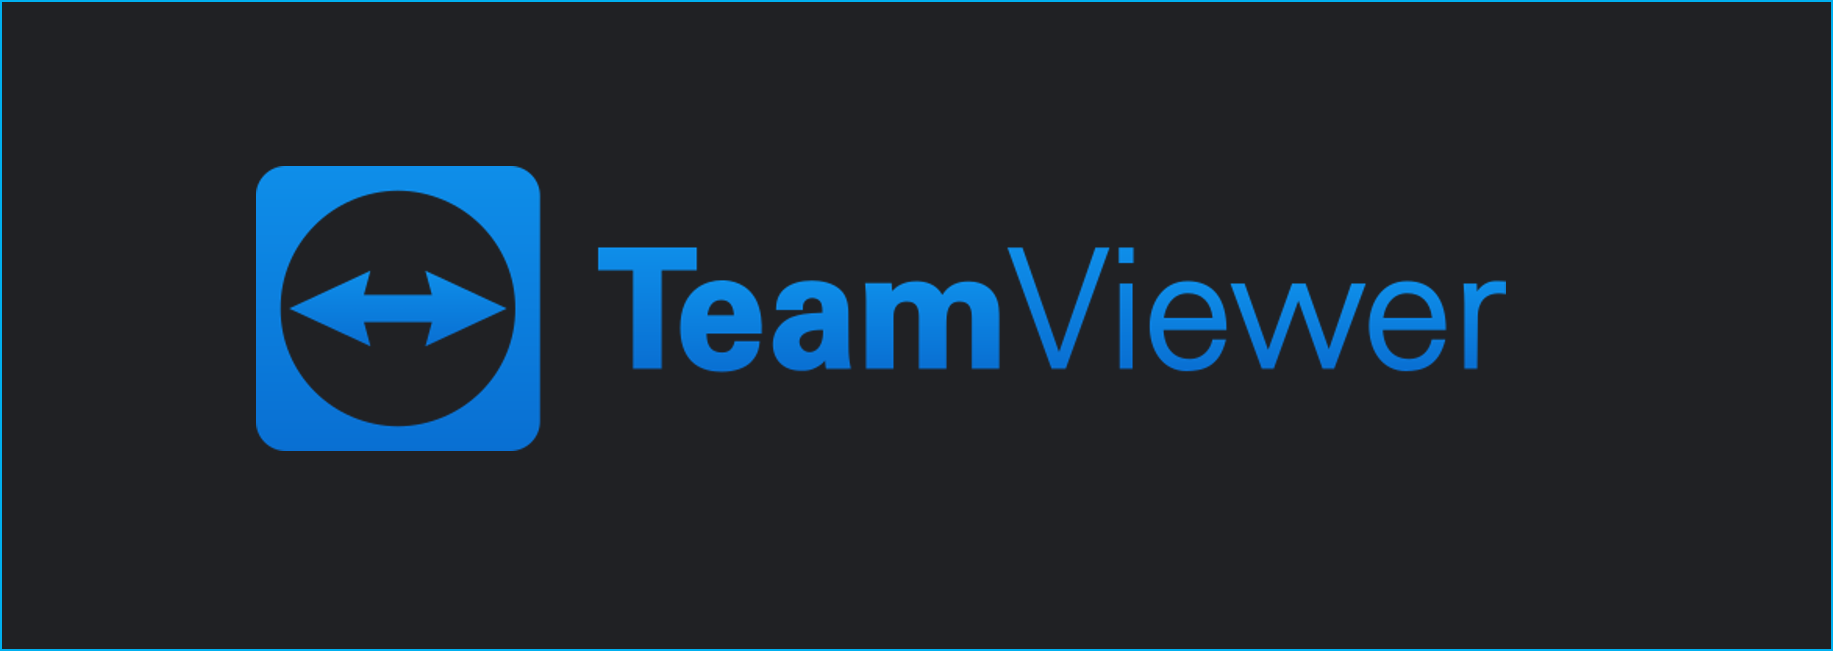 En este momento estás viendo ¿Conoces Team Viewer?